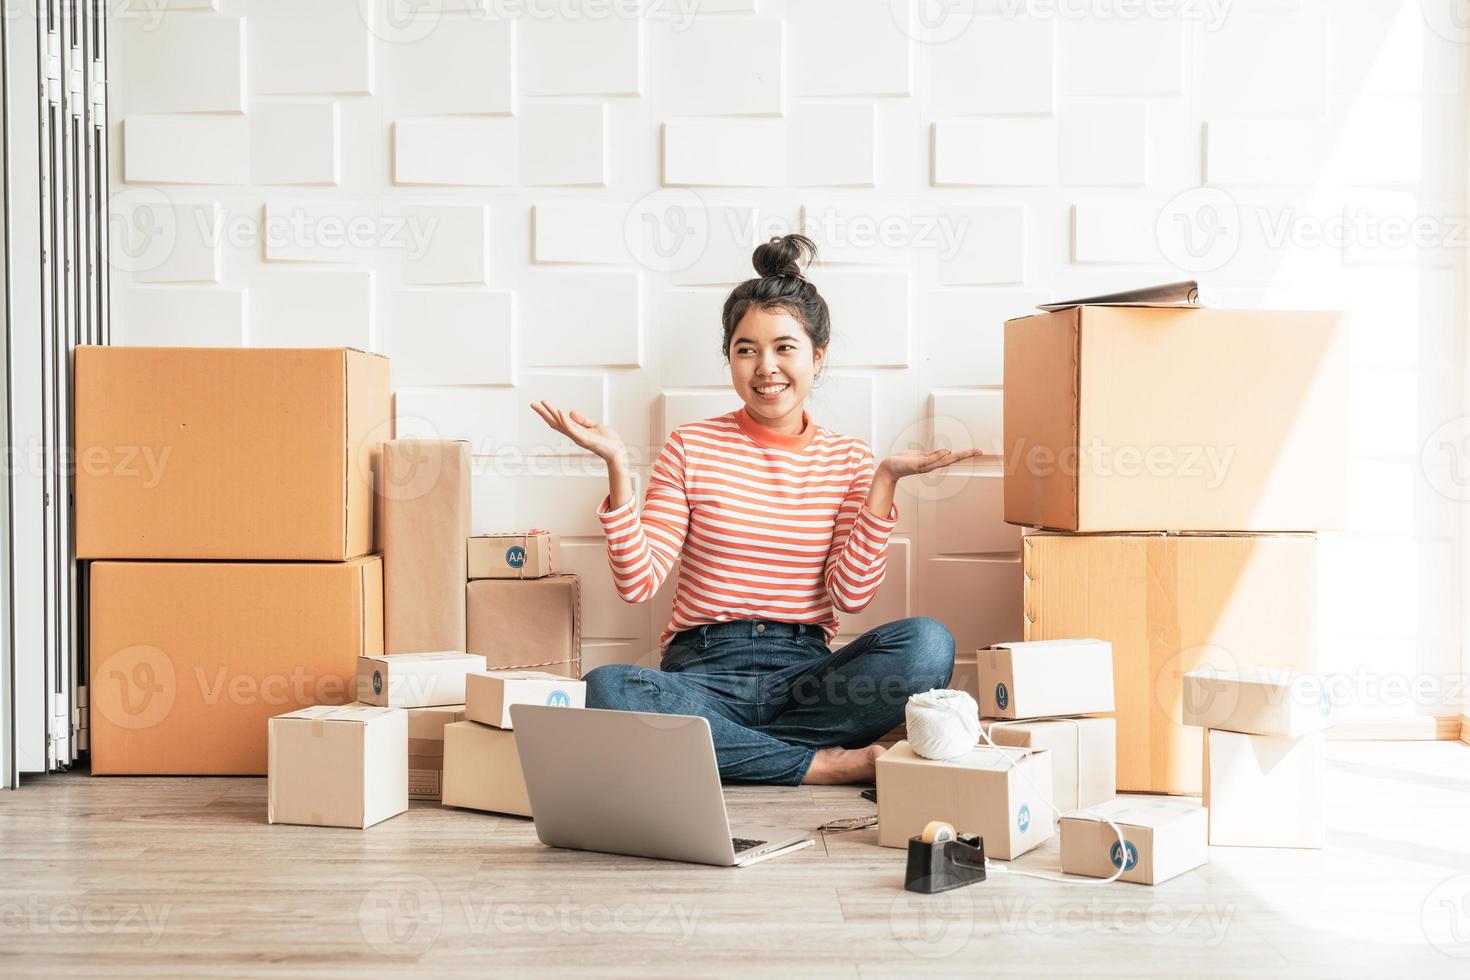 asiatisk kvinnaföretagare som arbetar hemma med förpackningslådan på arbetsplatsen - online-shopping sme-entreprenör eller frilansarbetsbegrepp foto